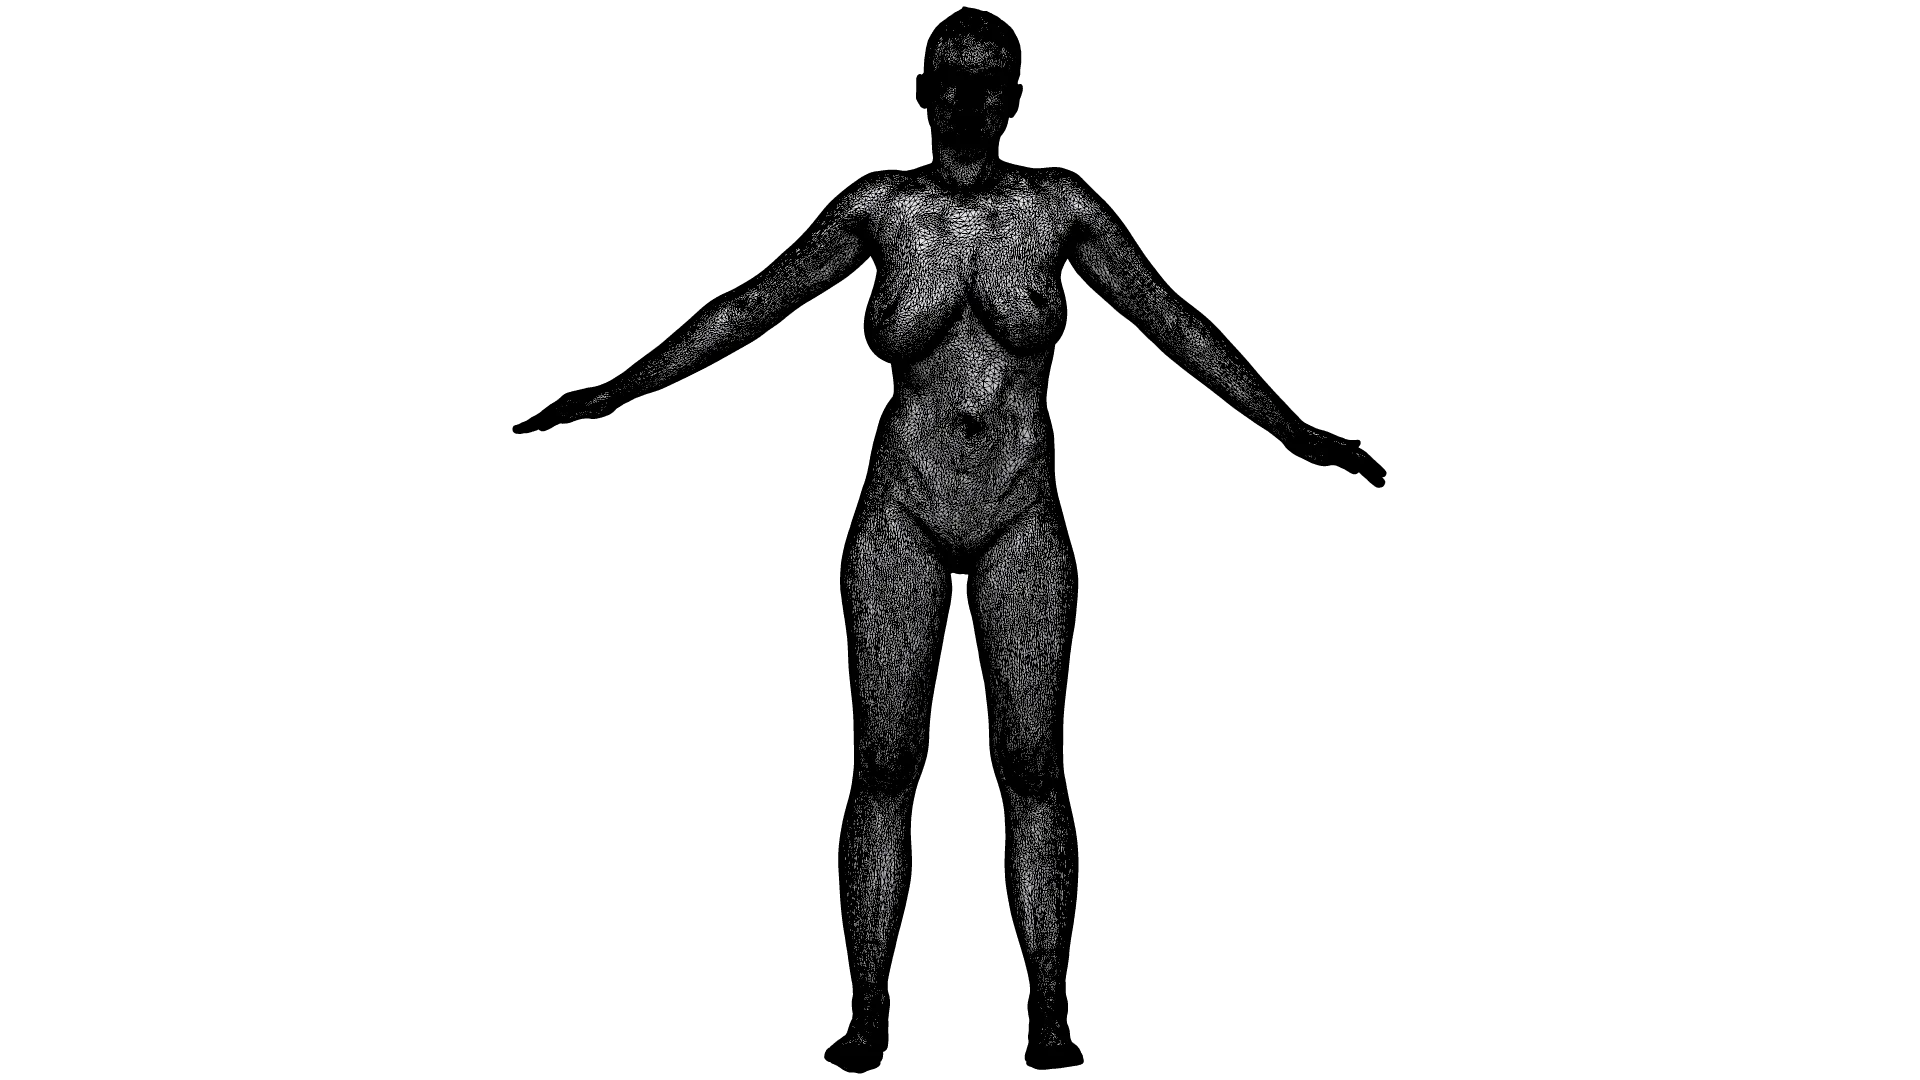 Base Body Scan | 3D Model Lucy Li